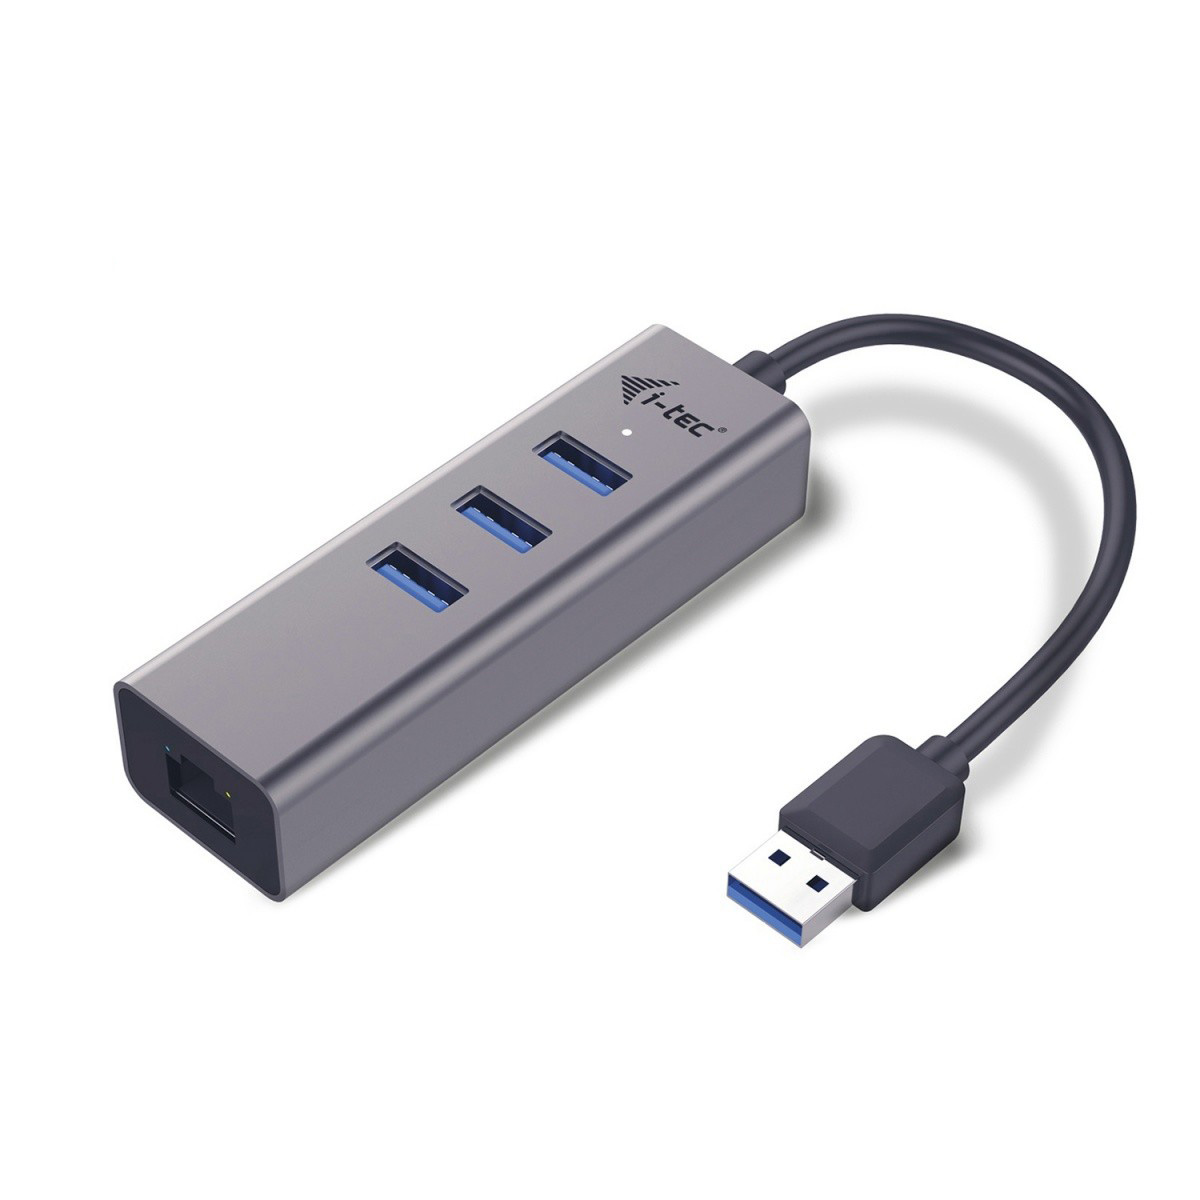 Usb c hub 3.0. USB концентратор USB 3.0. Разветвитель юсб 3.0. Адаптер USB-C/Gigabit Ethernet. Концентратор USB 3.0 + lan.